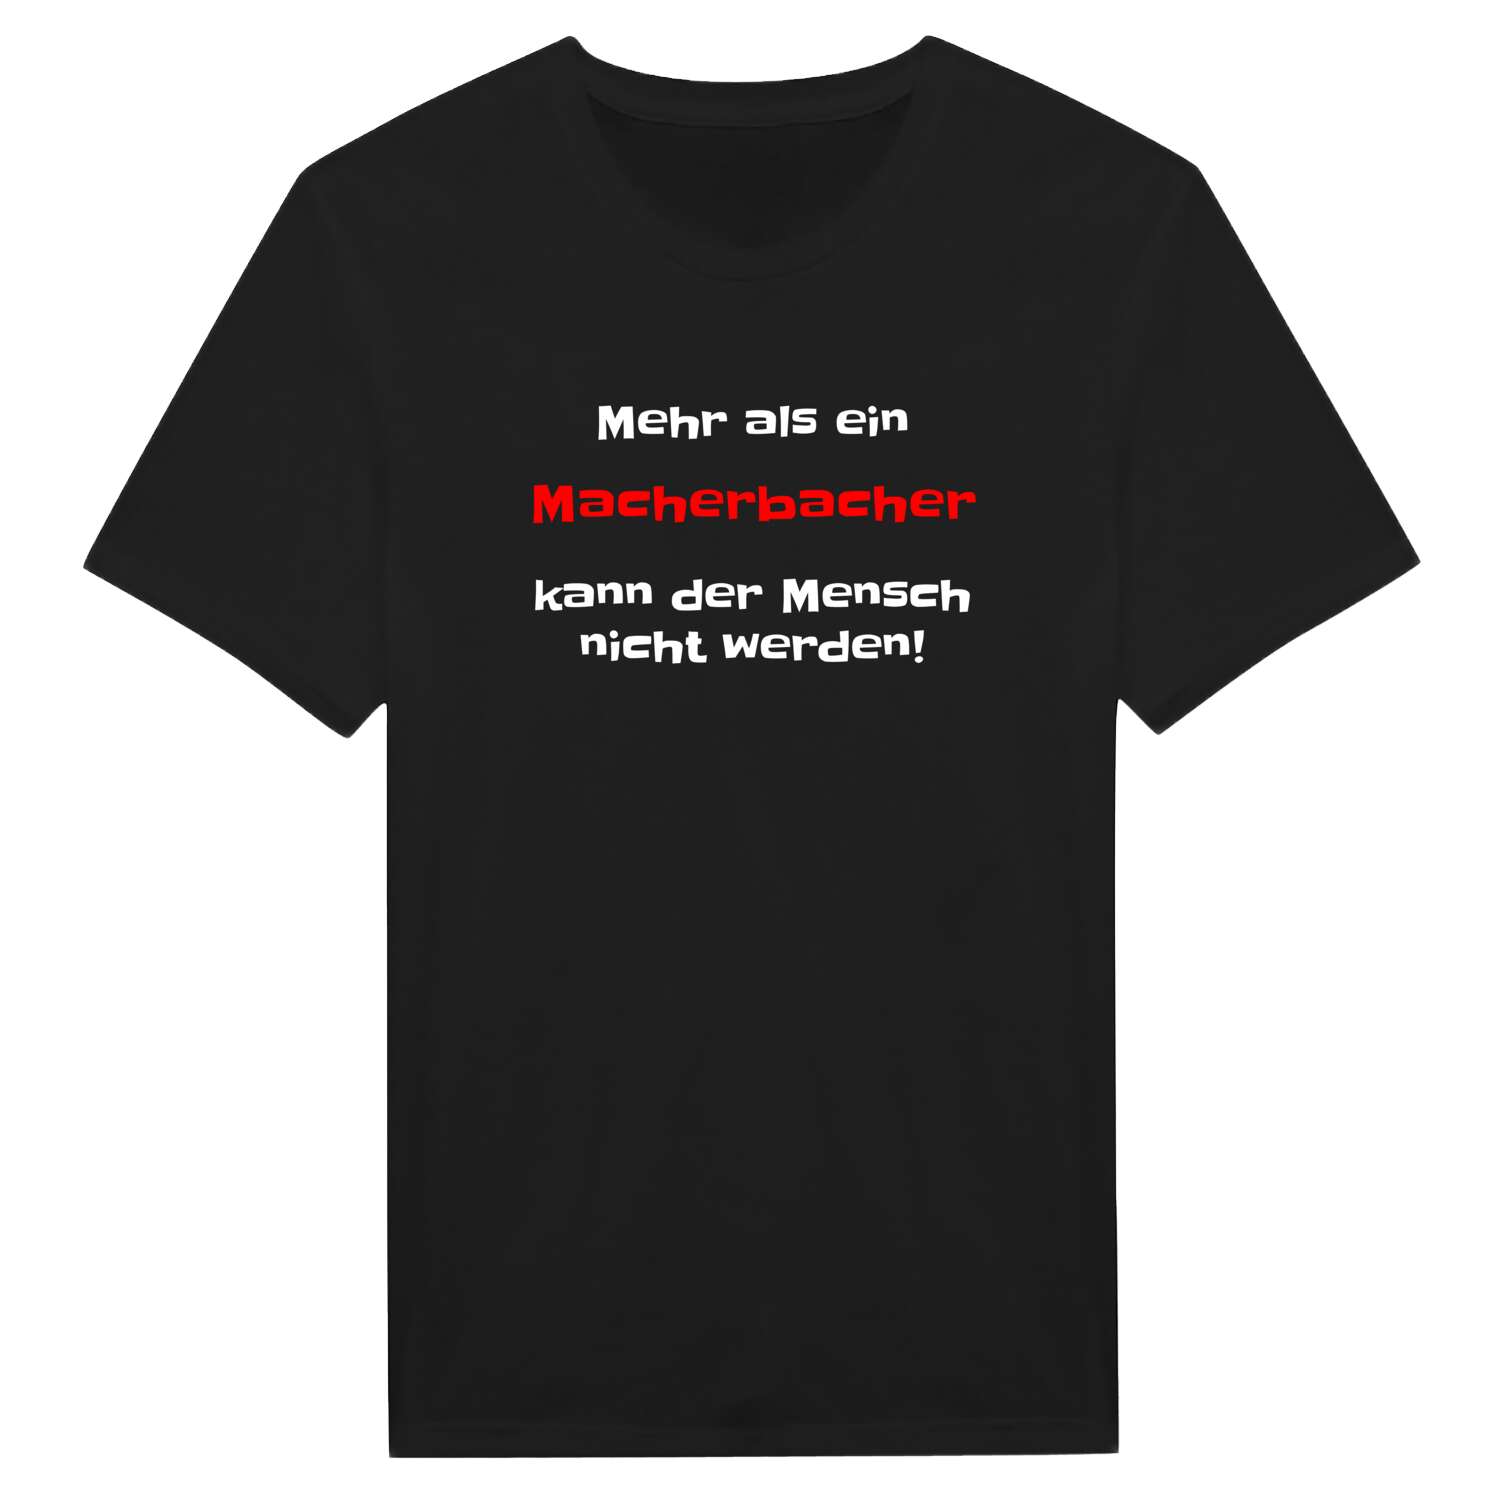 Macherbach T-Shirt »Mehr als ein«